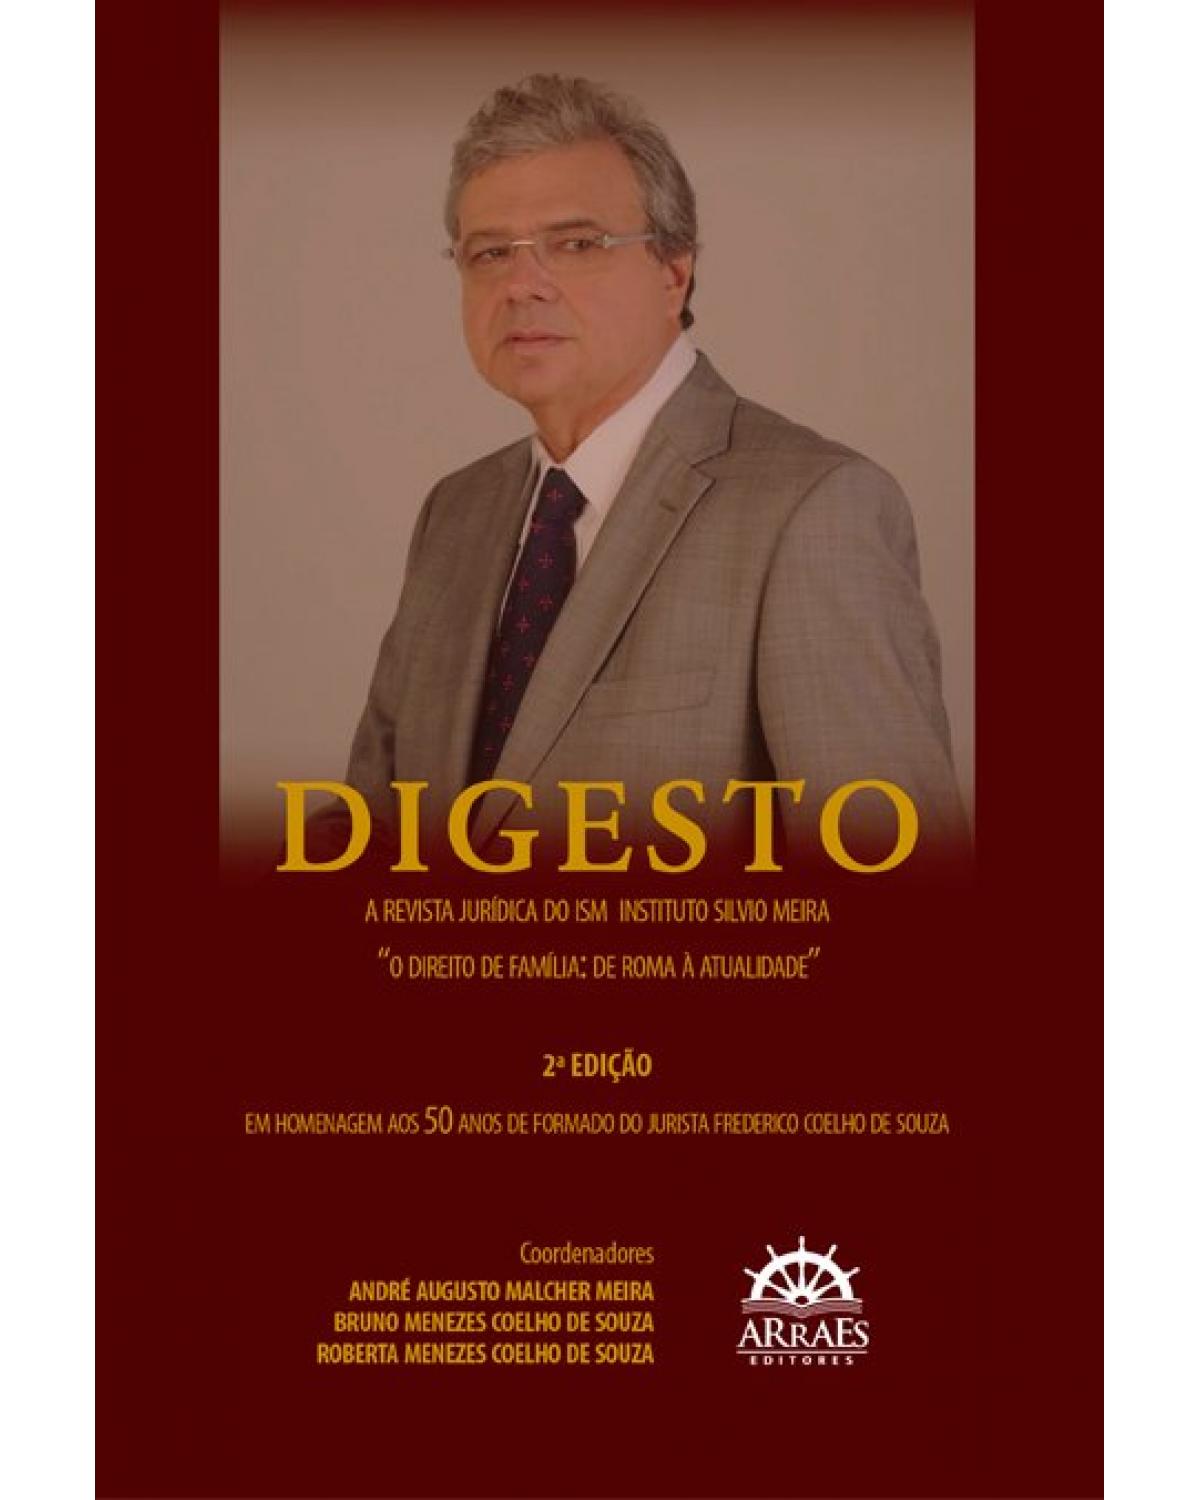 Digesto - A revista jurídica do ISM - Instituto Silvio Meira - “O direito de família: de Roma à atualidade”: em homenagem aos 50 anos de formado do jurista Frederico Coelho de Souza - 2ª Edição | 2020